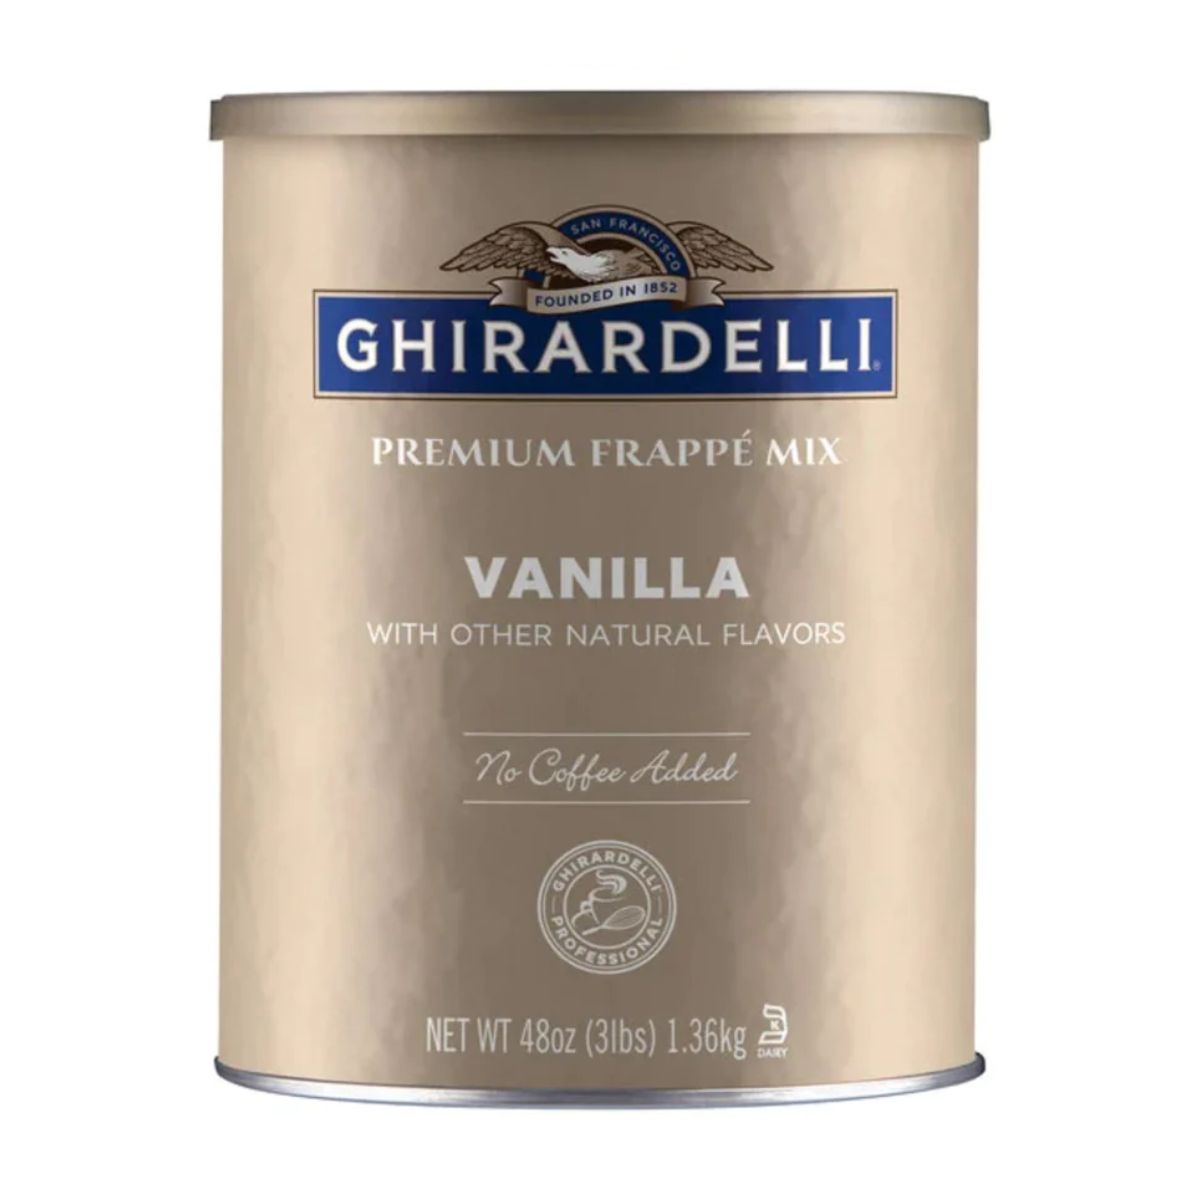 Ghirardelli Vanilla Premium Frappe Mix - 3lb Can